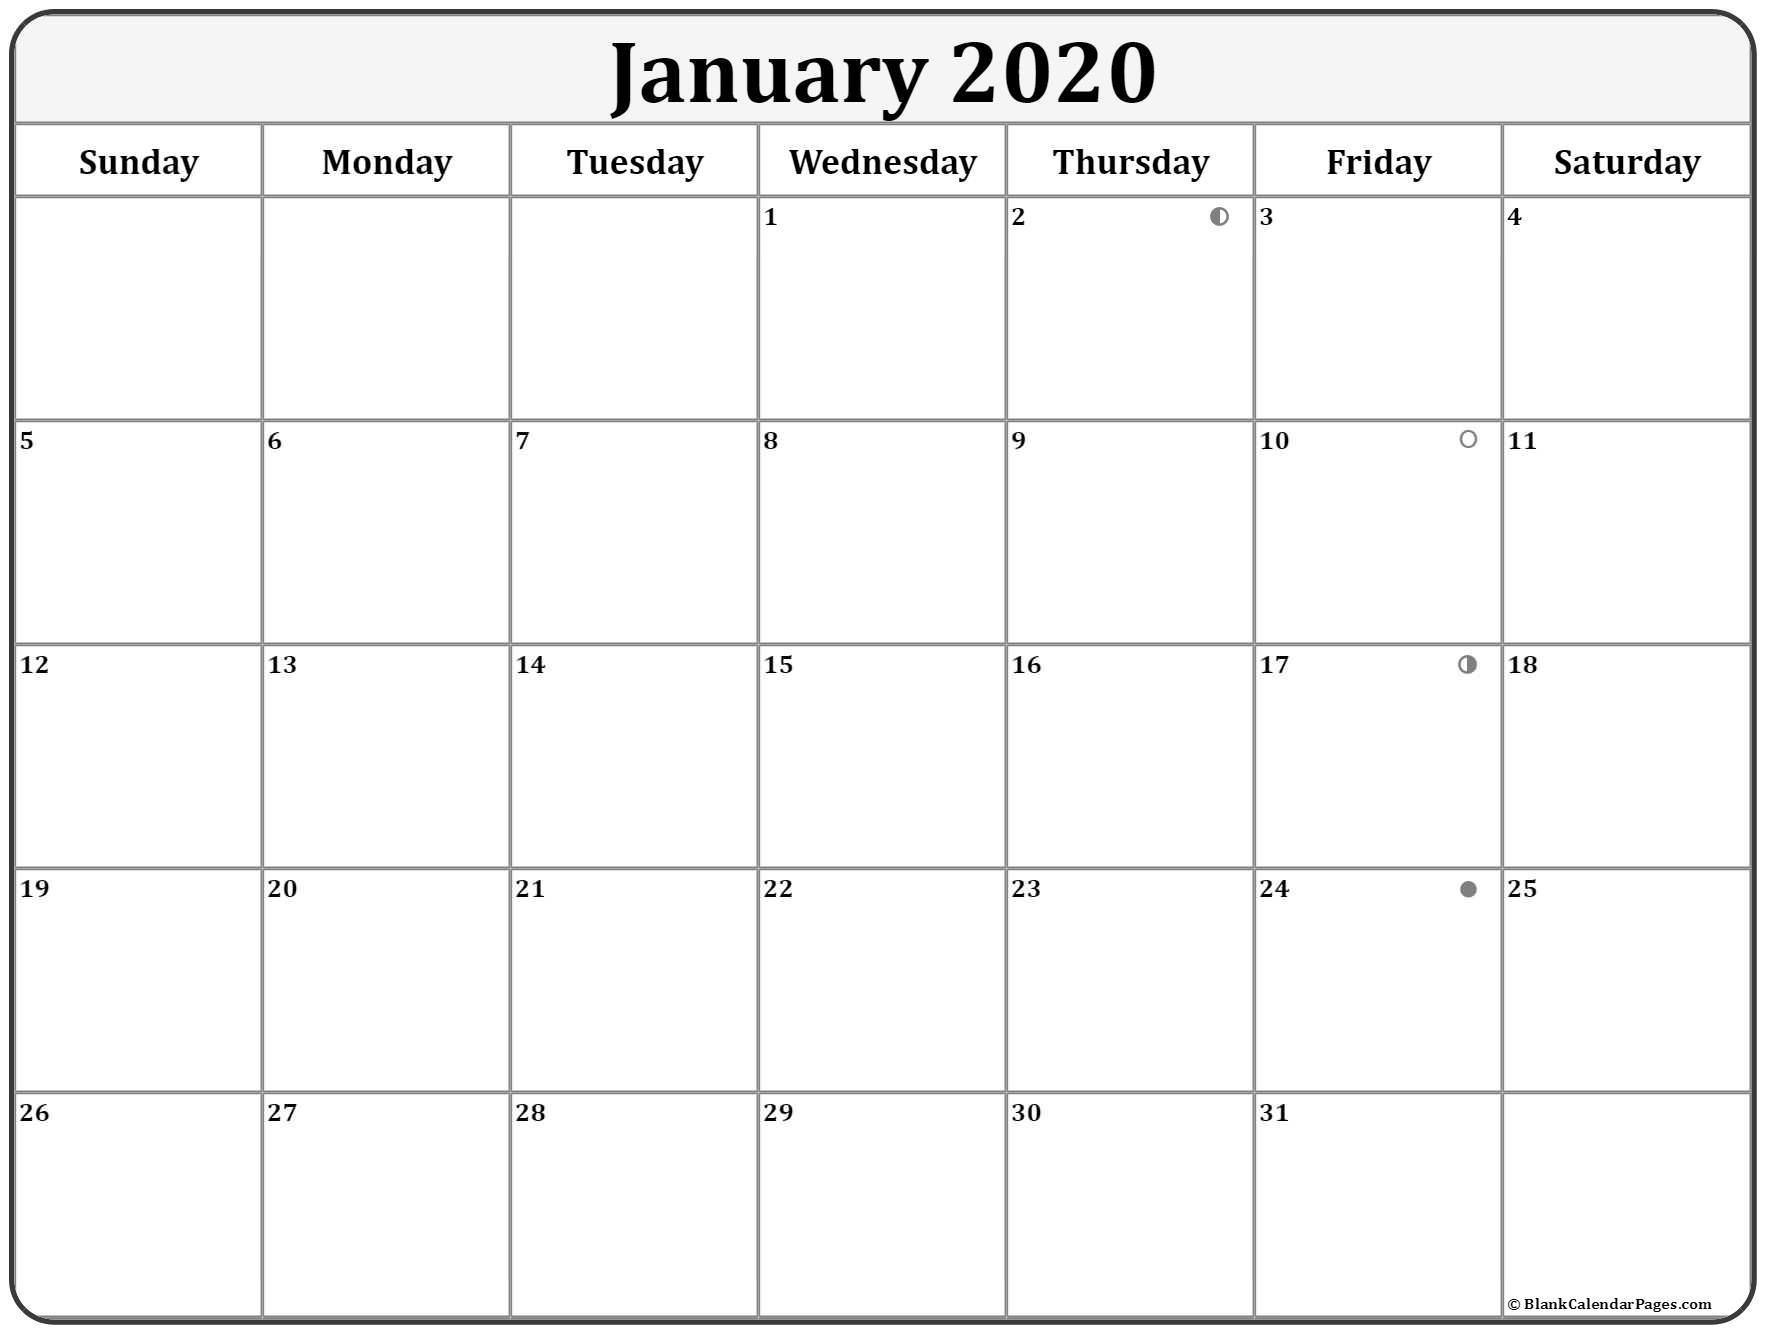 January 2020 Lunar Calendar | Moon Phase Calendar-January 2020 Calendar Full Moon